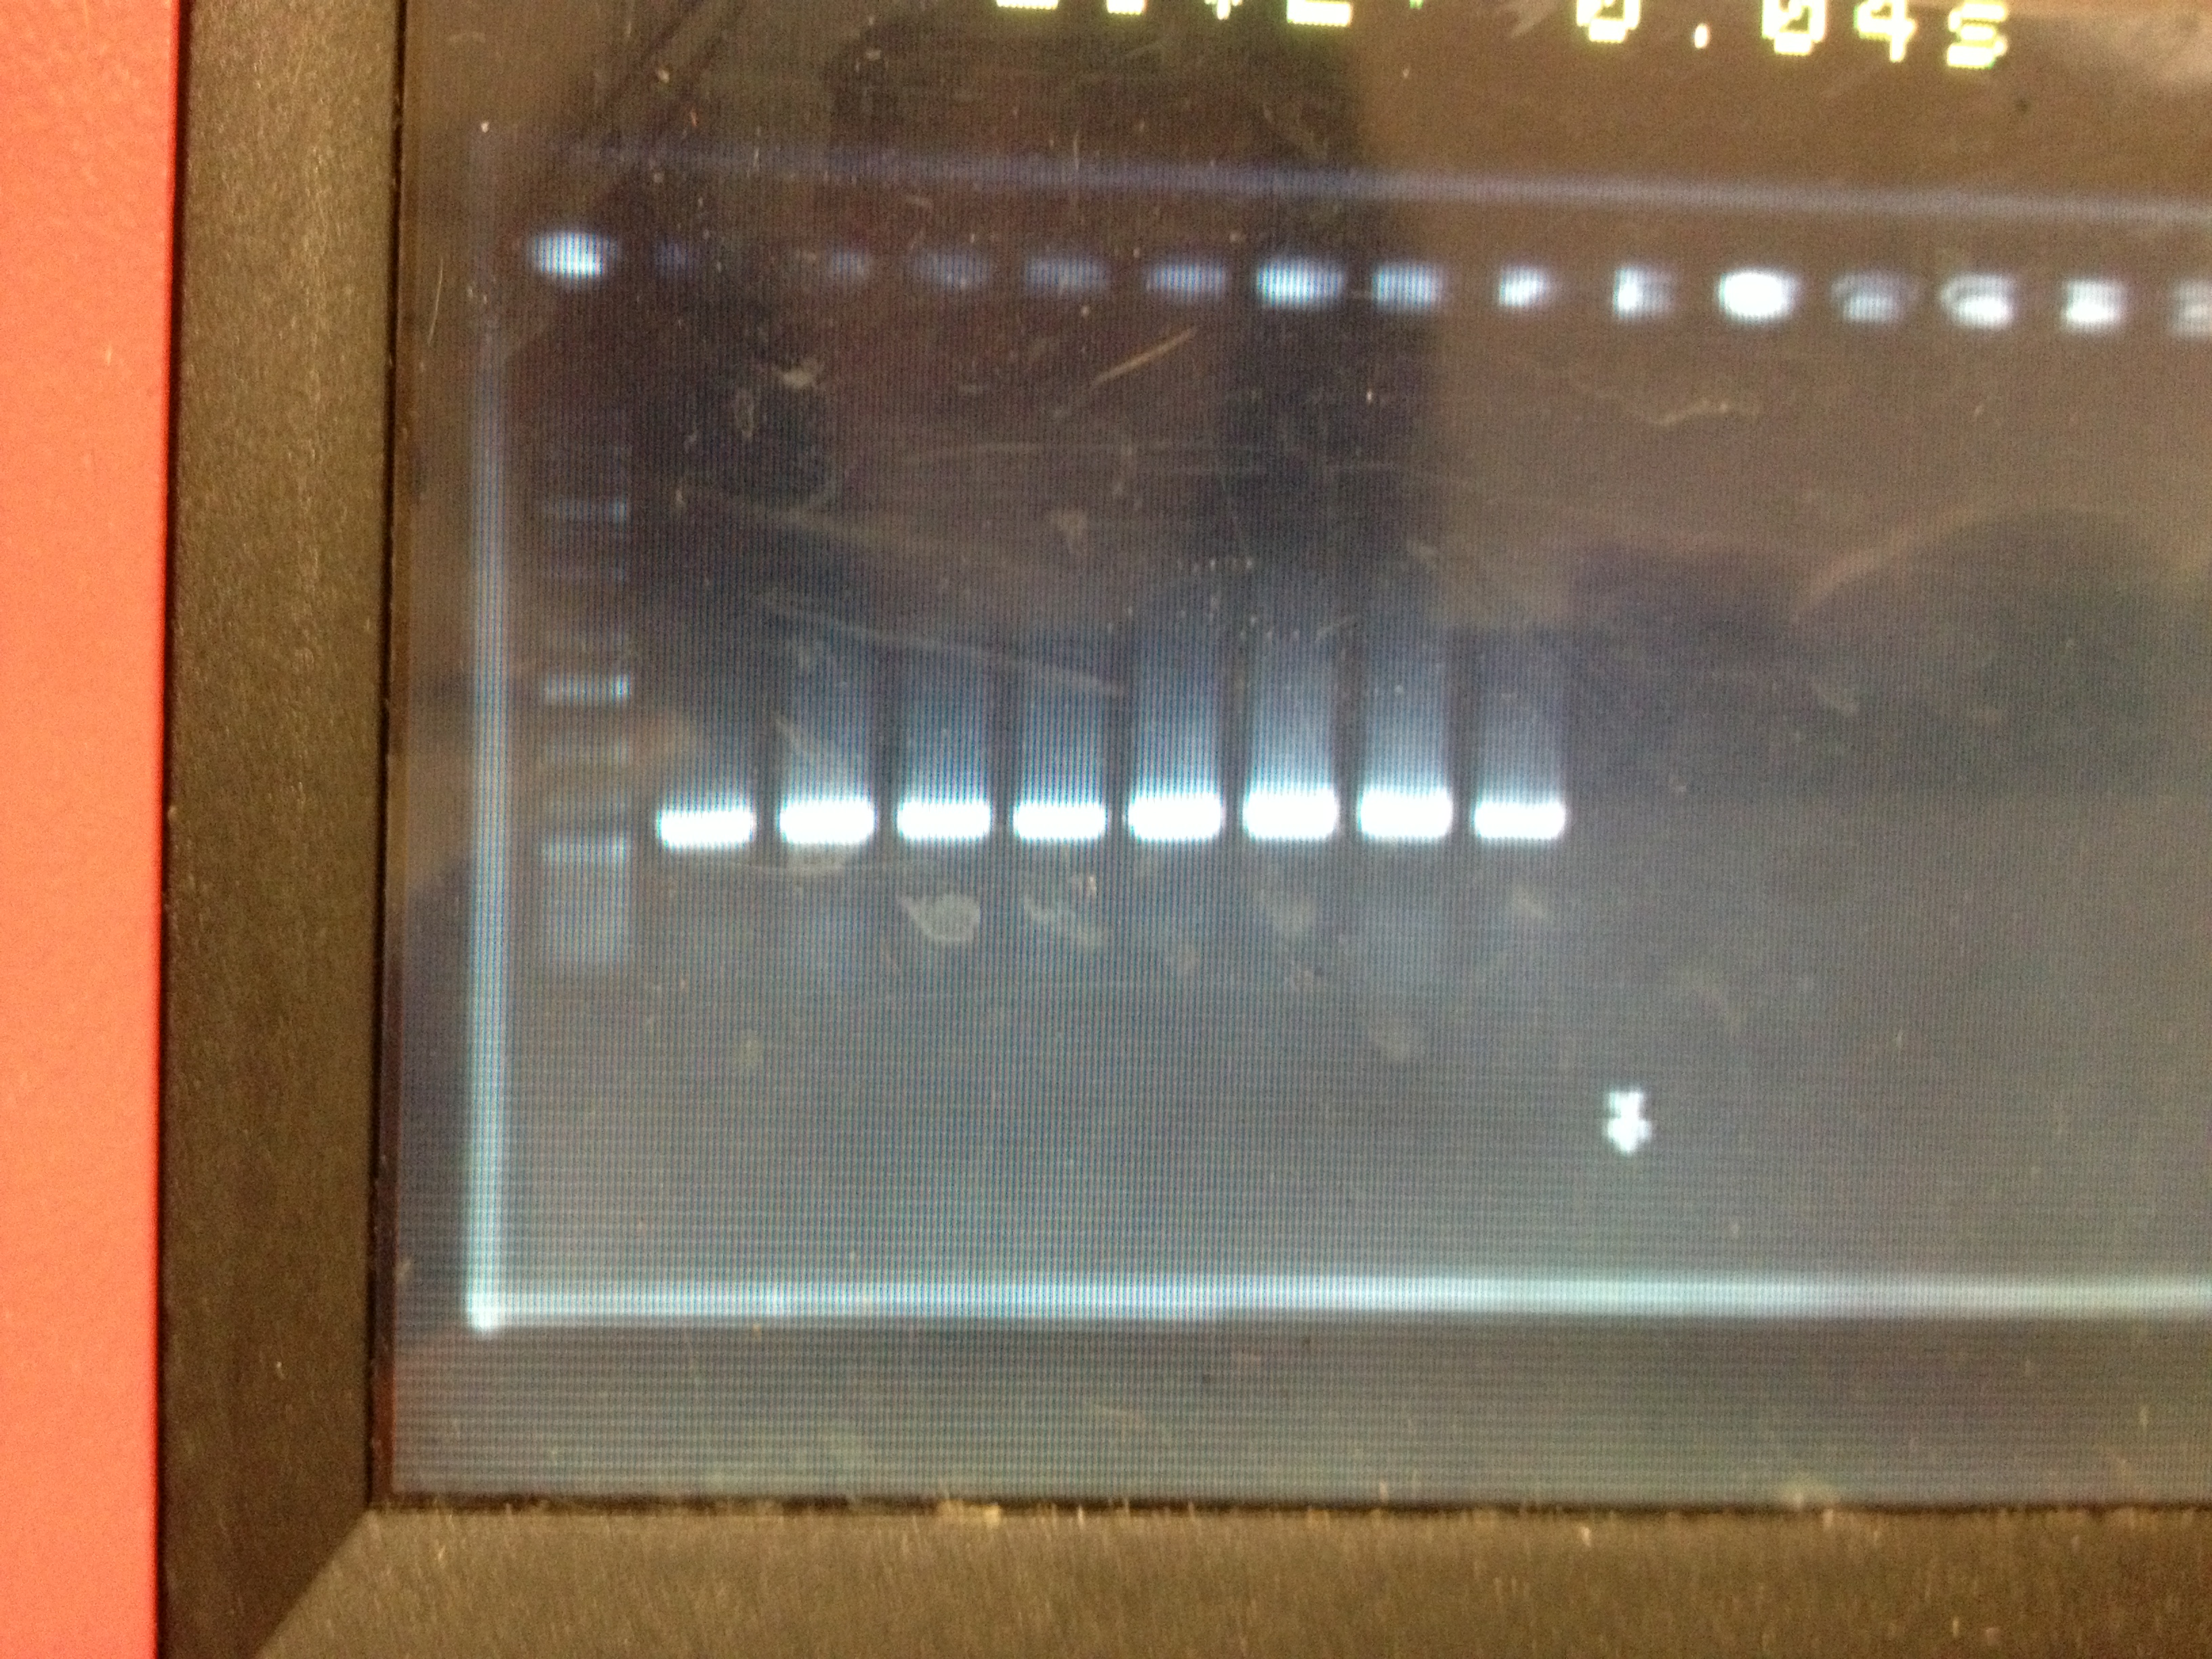 13-09-17 colony PCR pS013.2.JPG